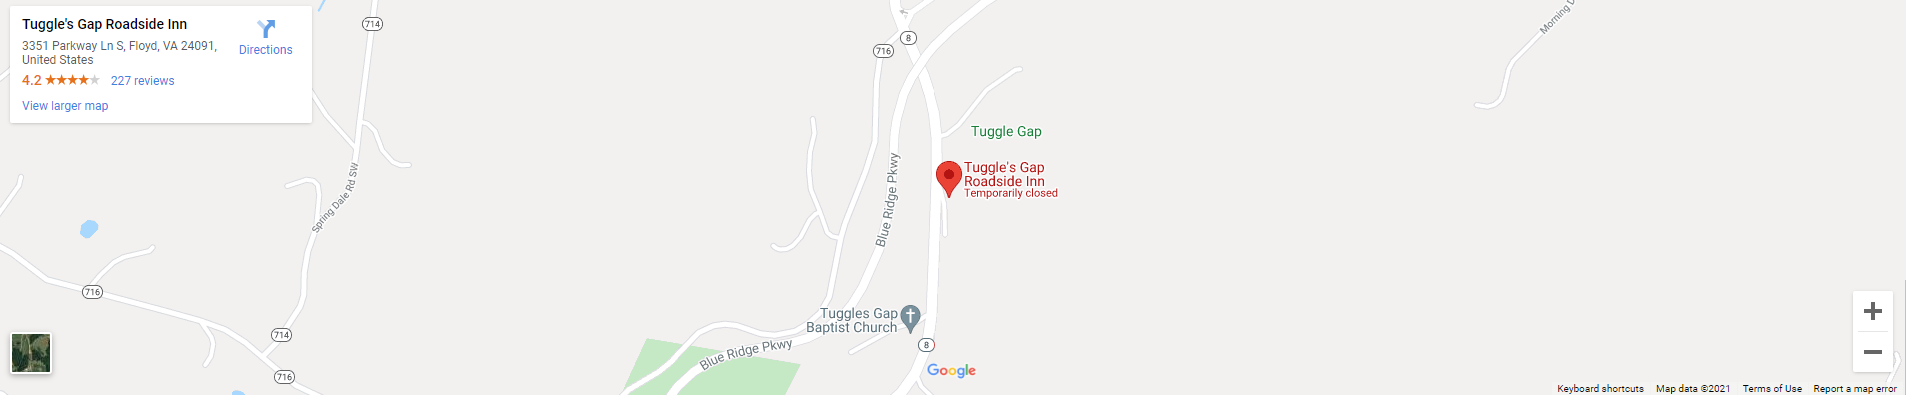 Tuggle's Gap Roadside Inn